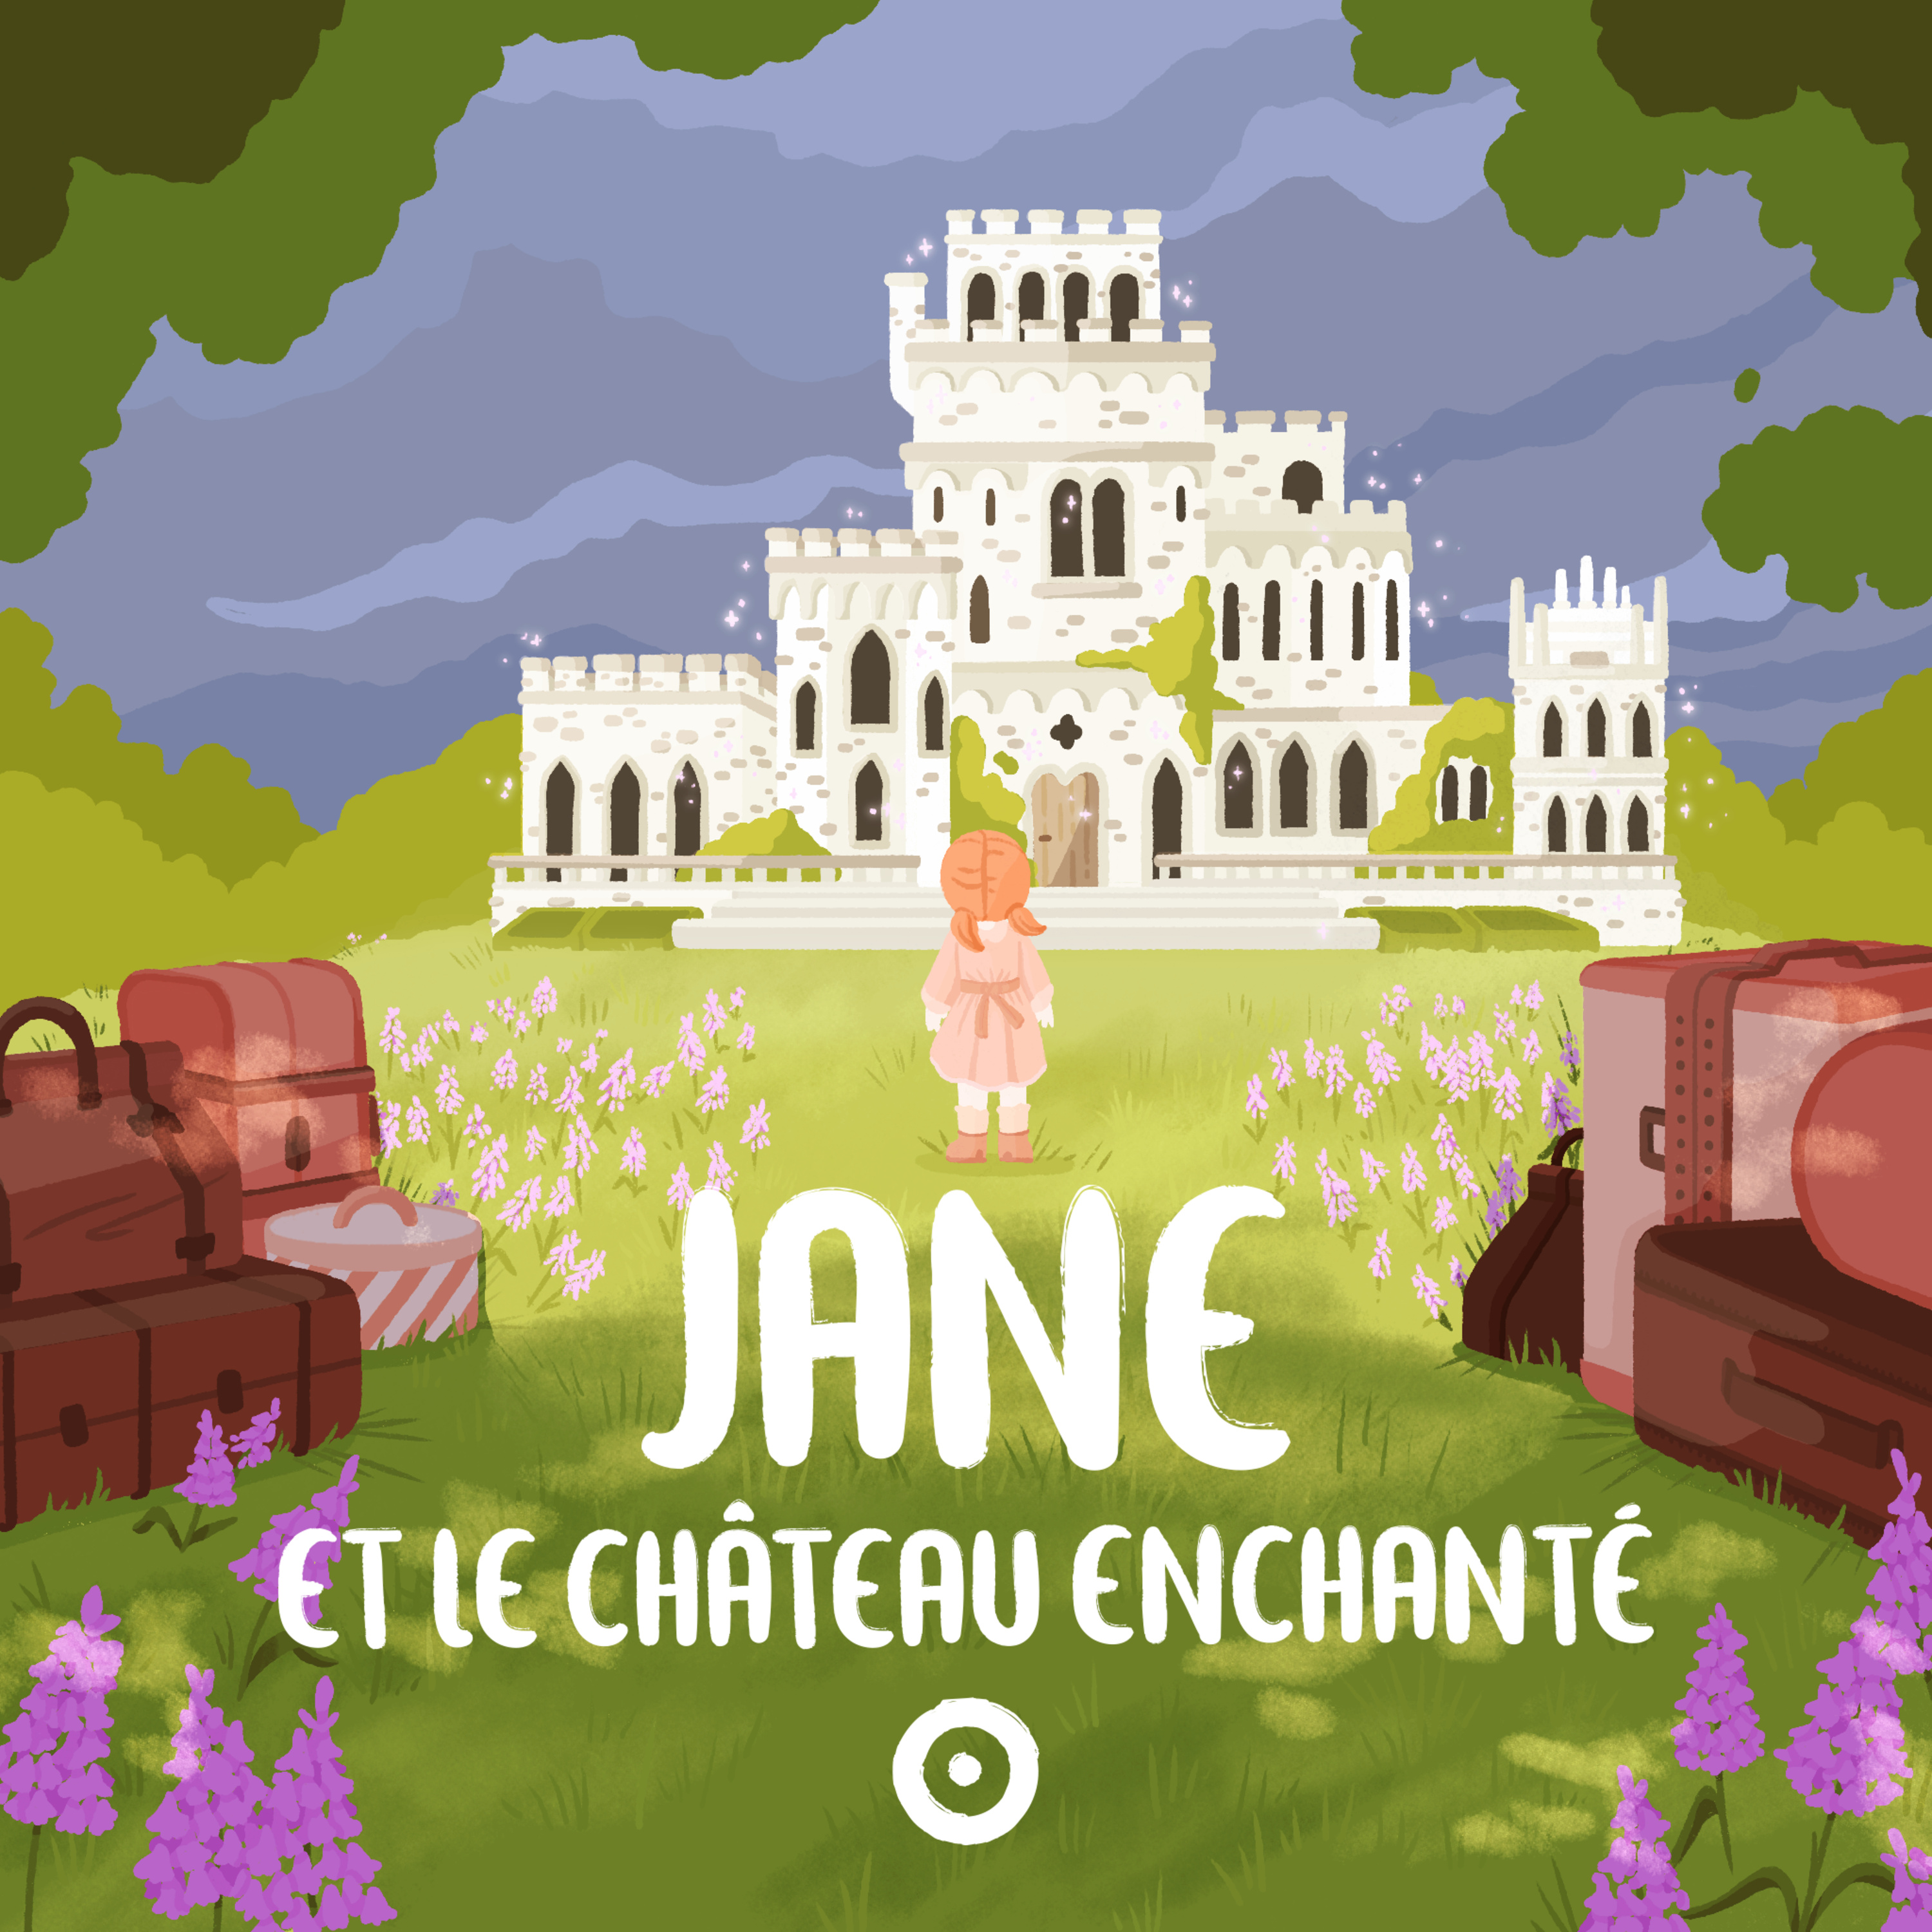 Episode 3 - Jane et le château enchanté - L'oiseau et la fleur